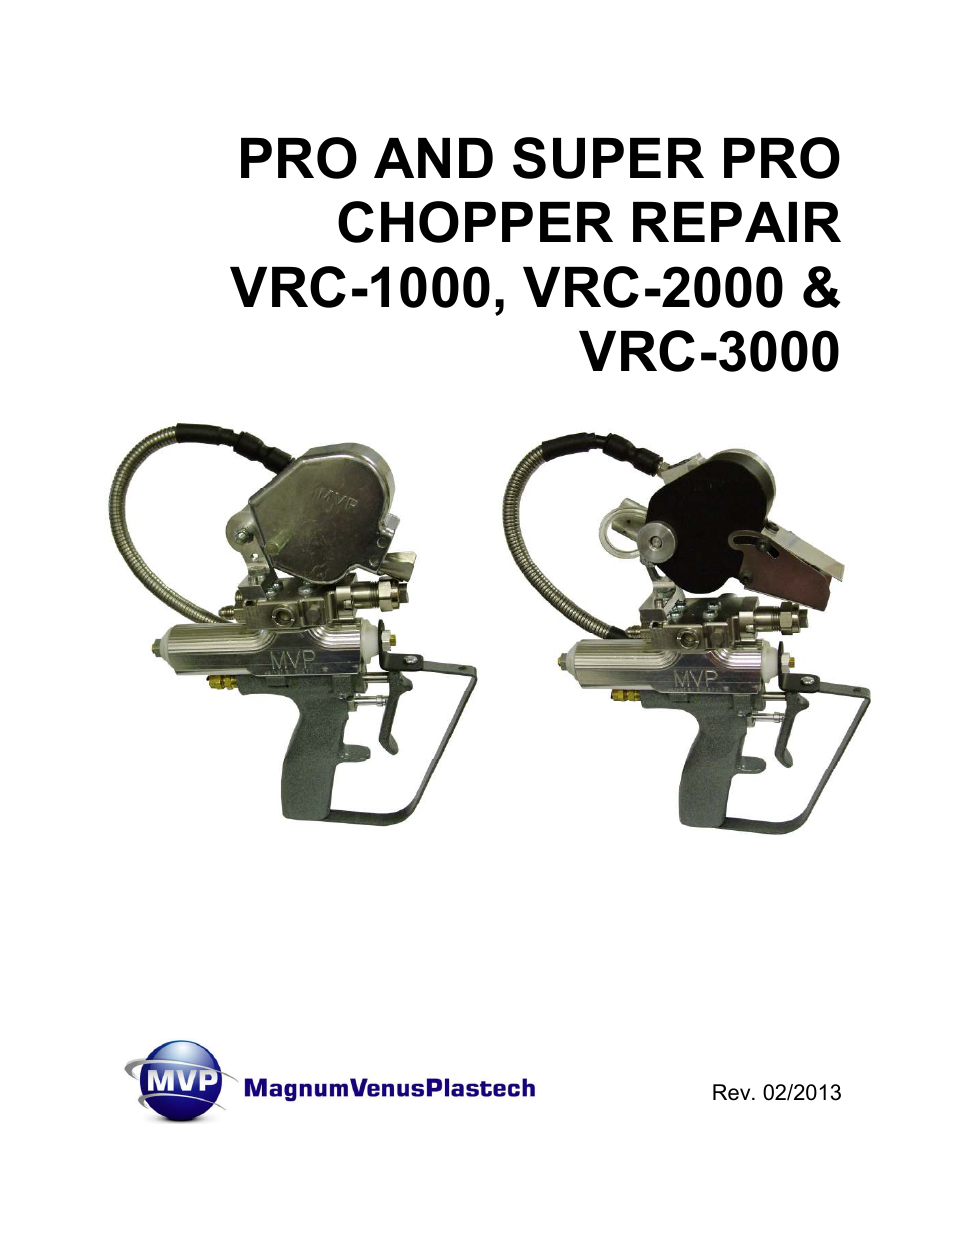 PRO AND SUPER PRO CHOPPER VRC-1000_2000_3000